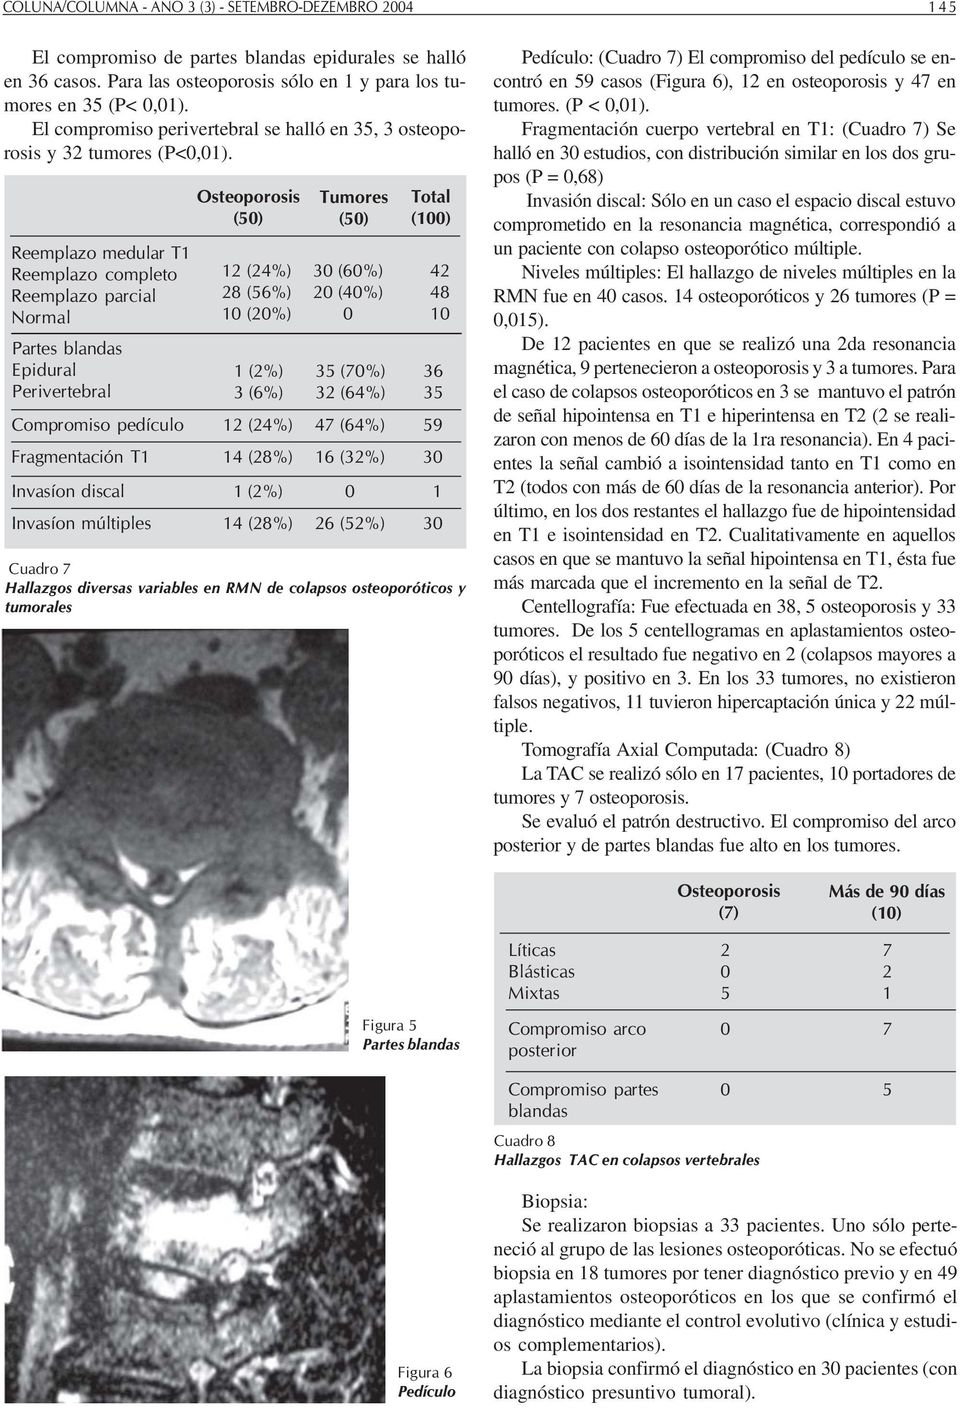 Reemplazo medular T Reemplazo completo Reemplazo parcial Normal Partes blandas Epidural Perivertebral (5) (4%) 8 (56%) (%) (%) 3 (6%) (5) 3 (6%) (4%) 35 (7%) 3 (64%) Compromiso pedículo (4%) 47 (64%)